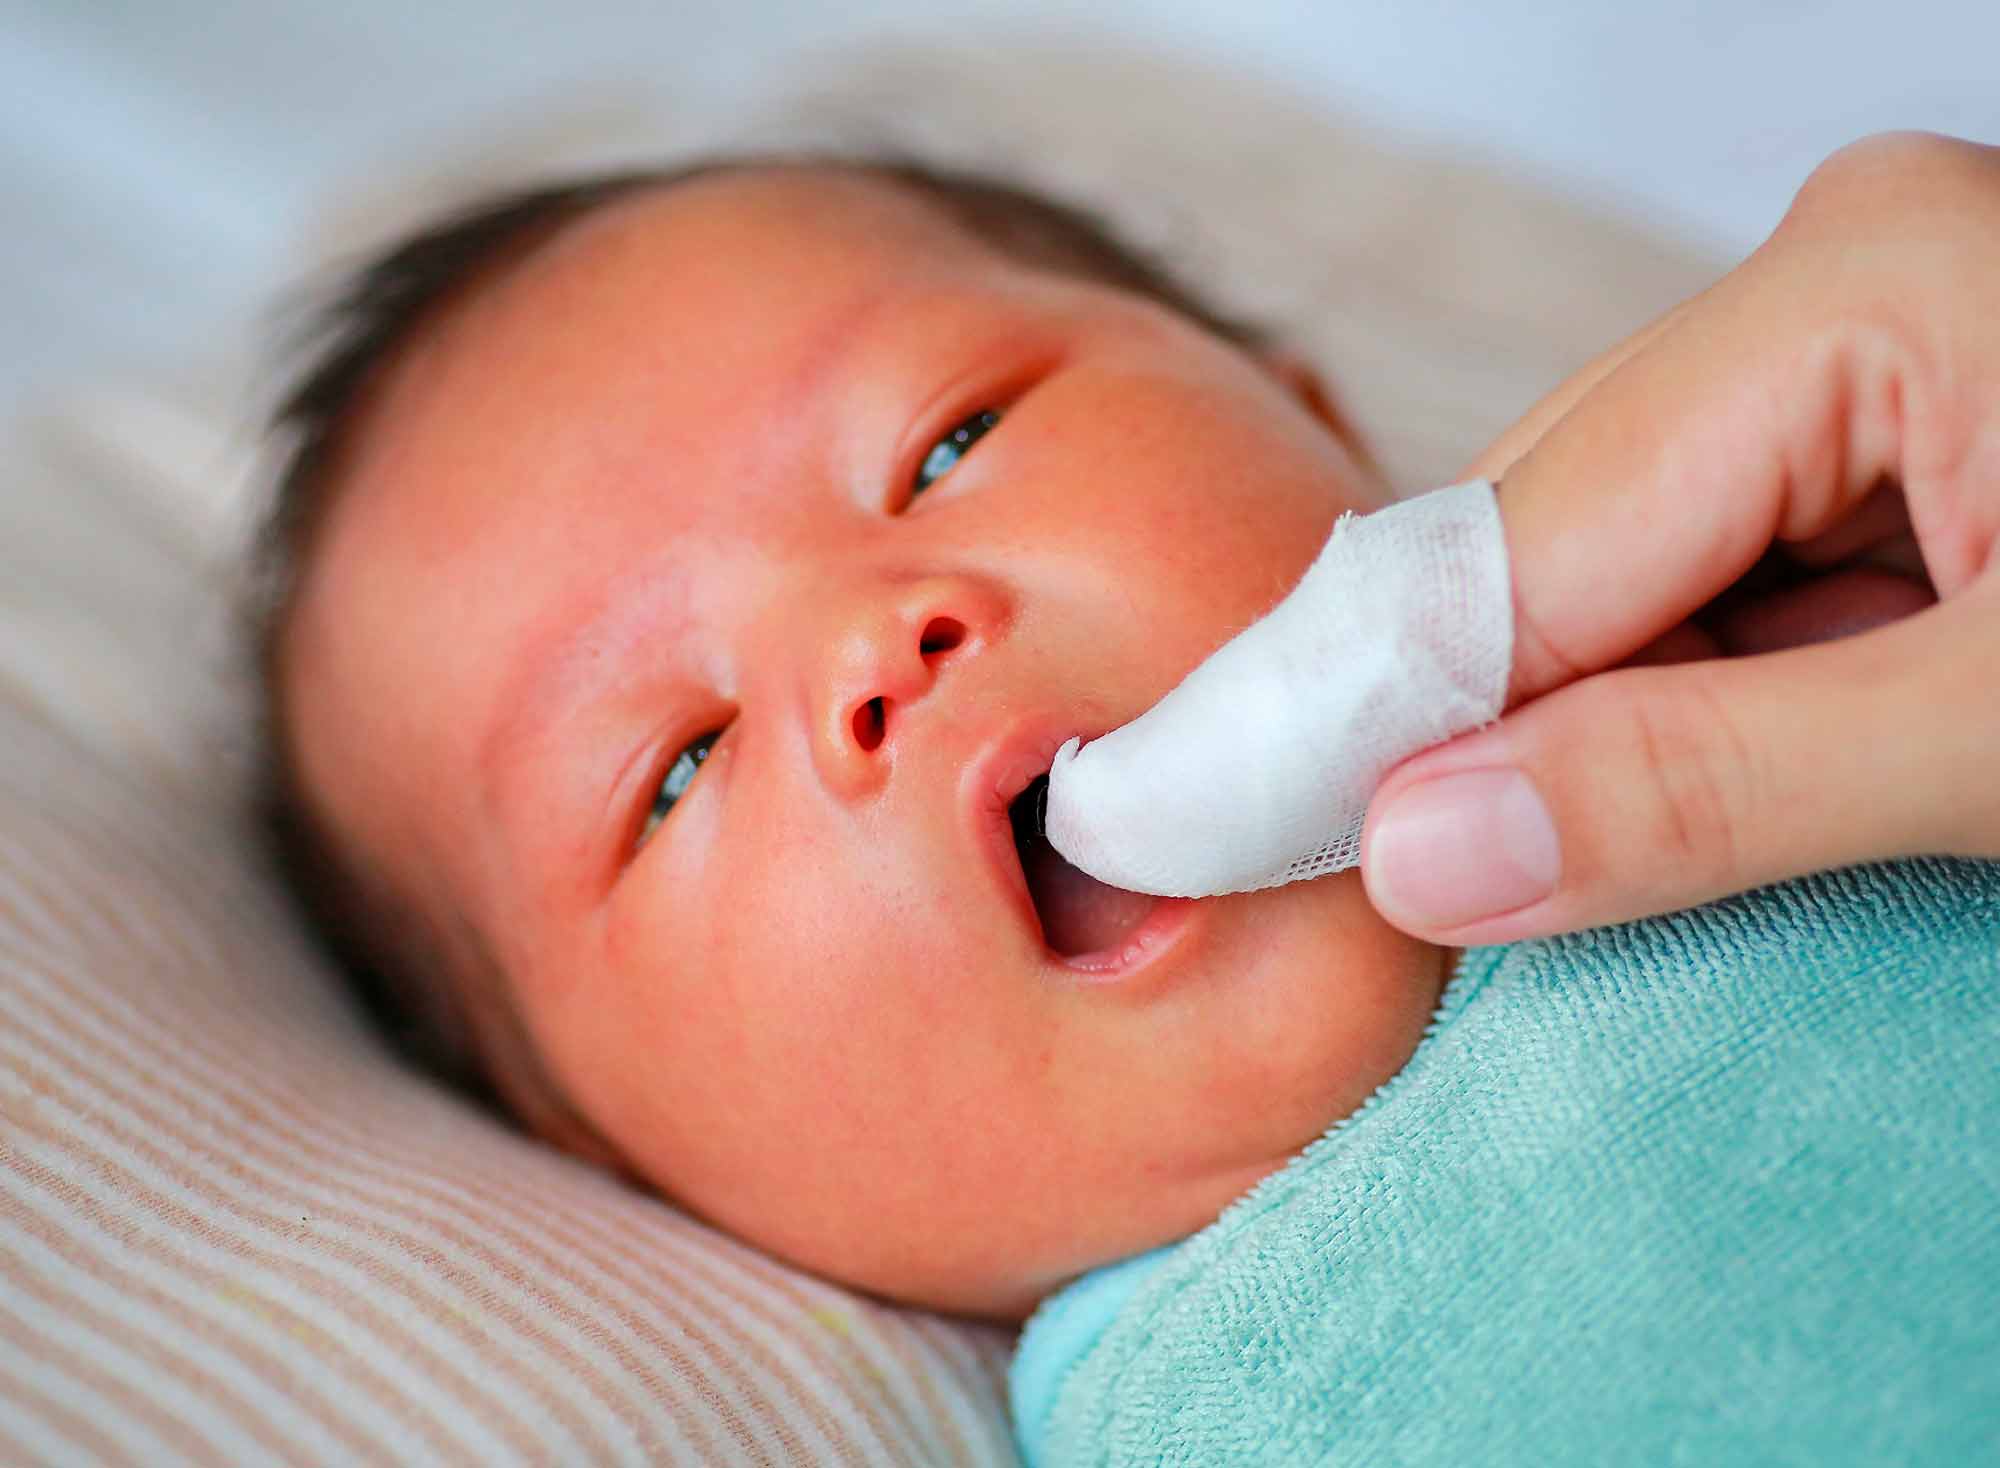 En los Bebés de hasta 6 meses, se deben limpiar las encías con una gasa húmeda después de cada alimento y antes de dormir